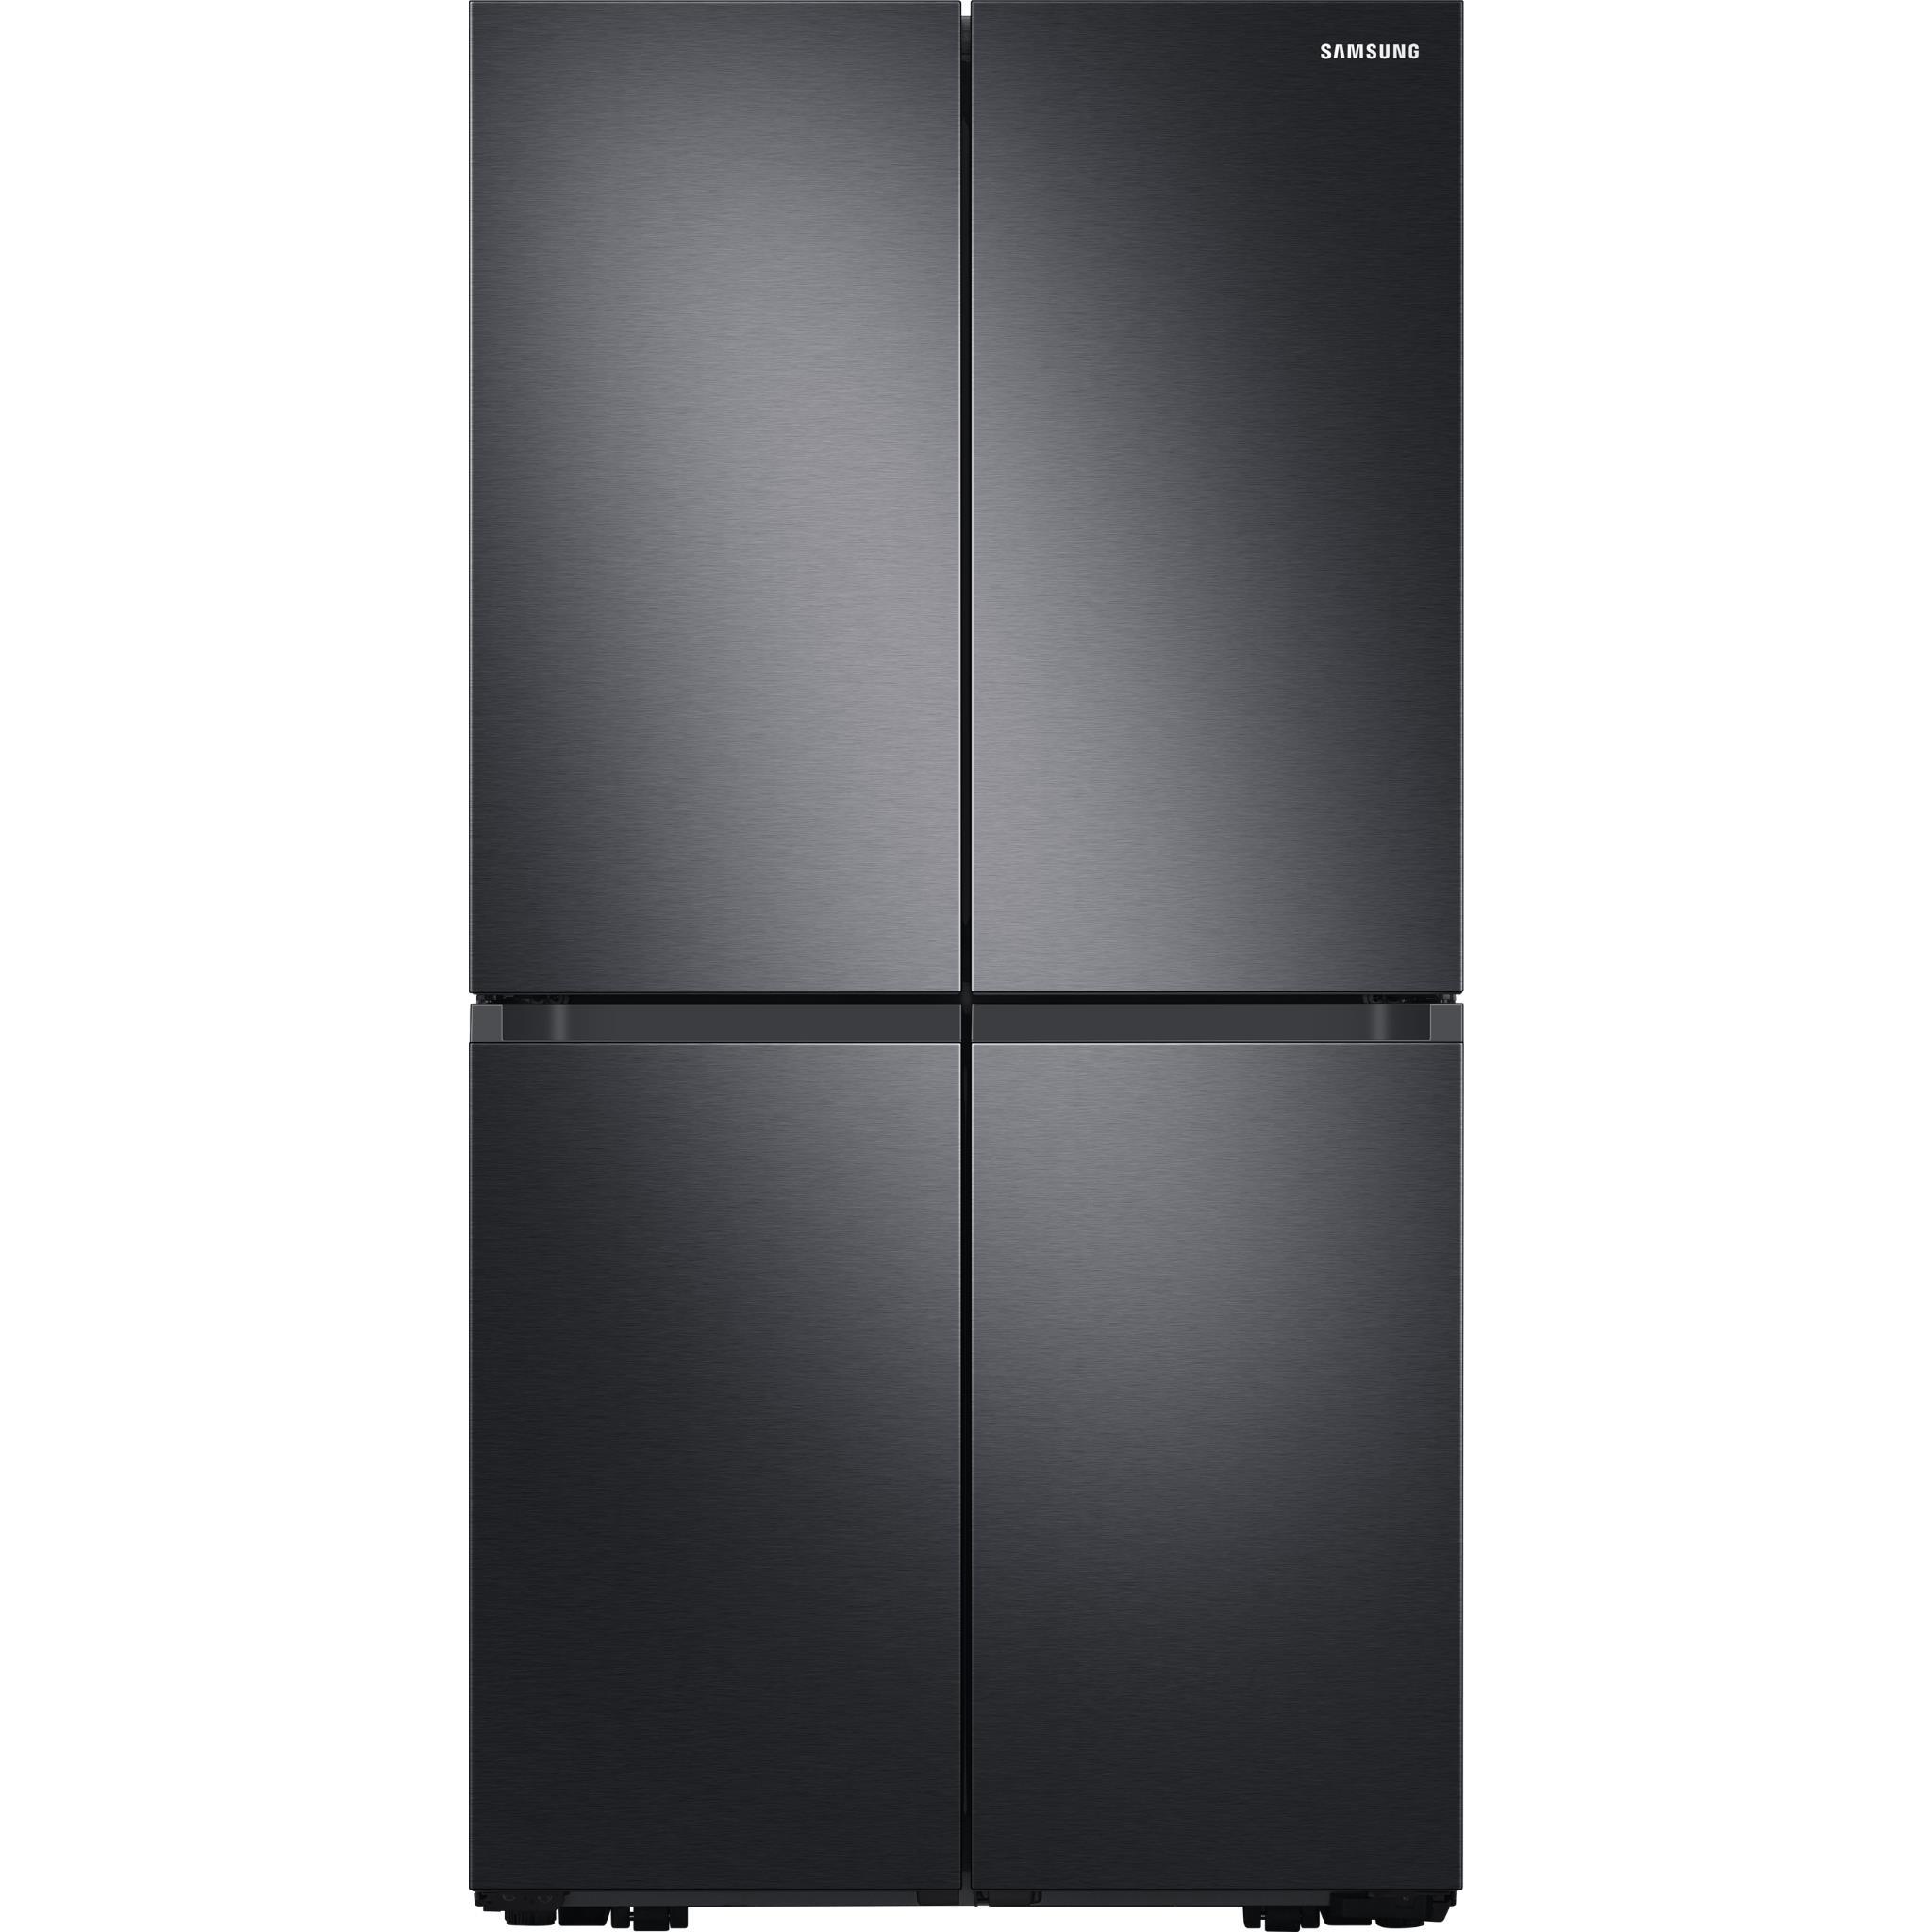 Samsung SRF7300 Refrigerator